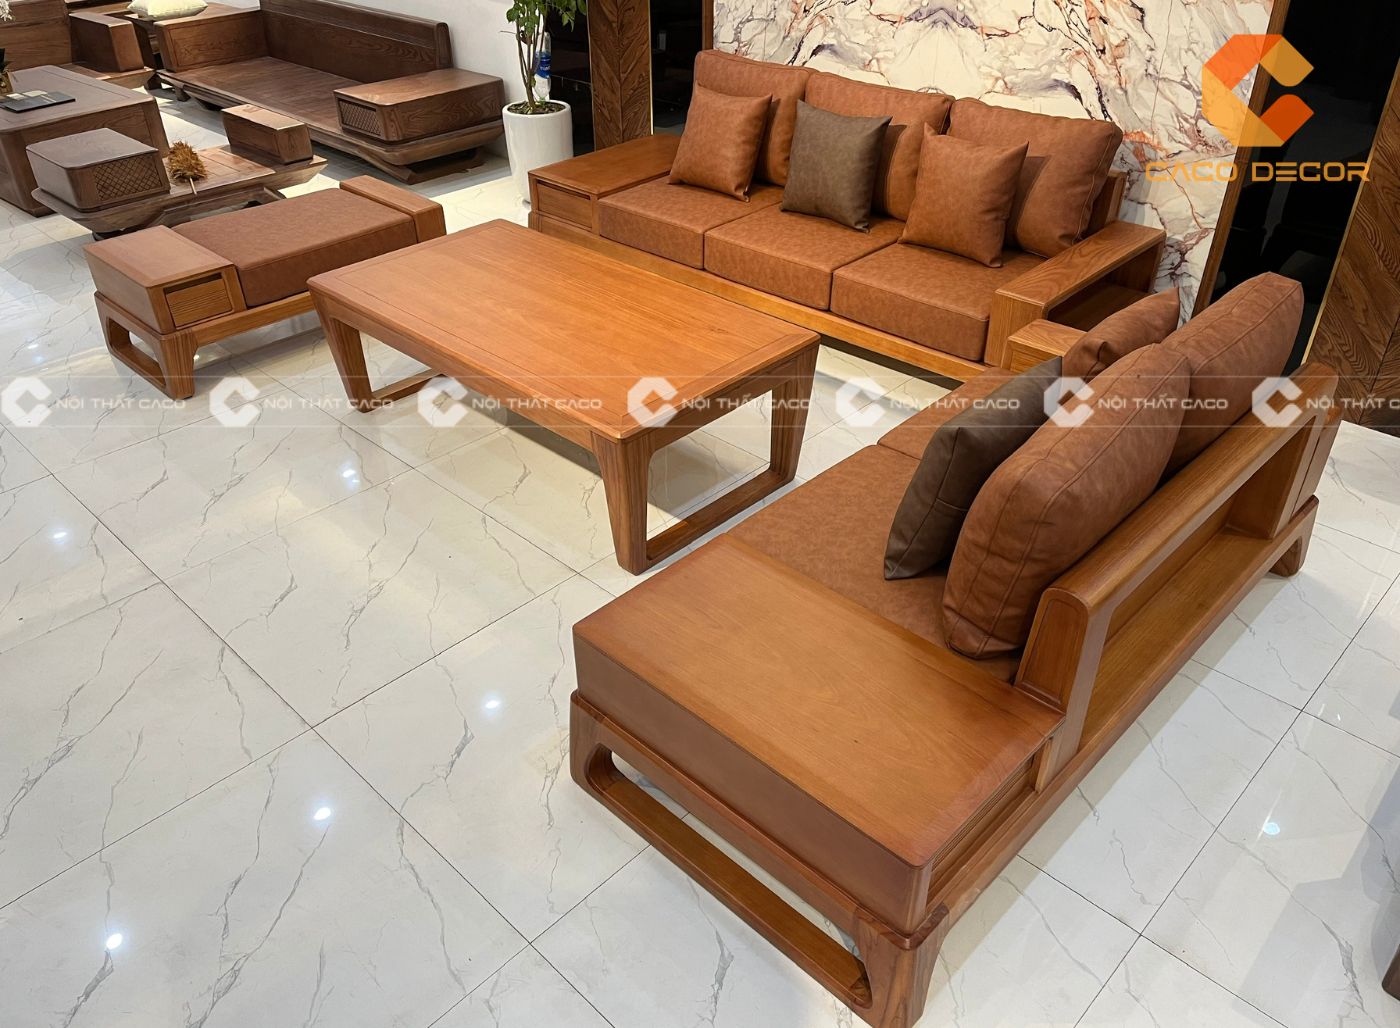 BST mẫu sofa gỗ gõ đỏ bền đẹp, bán chạy tại NỘI THẤT CACO 2